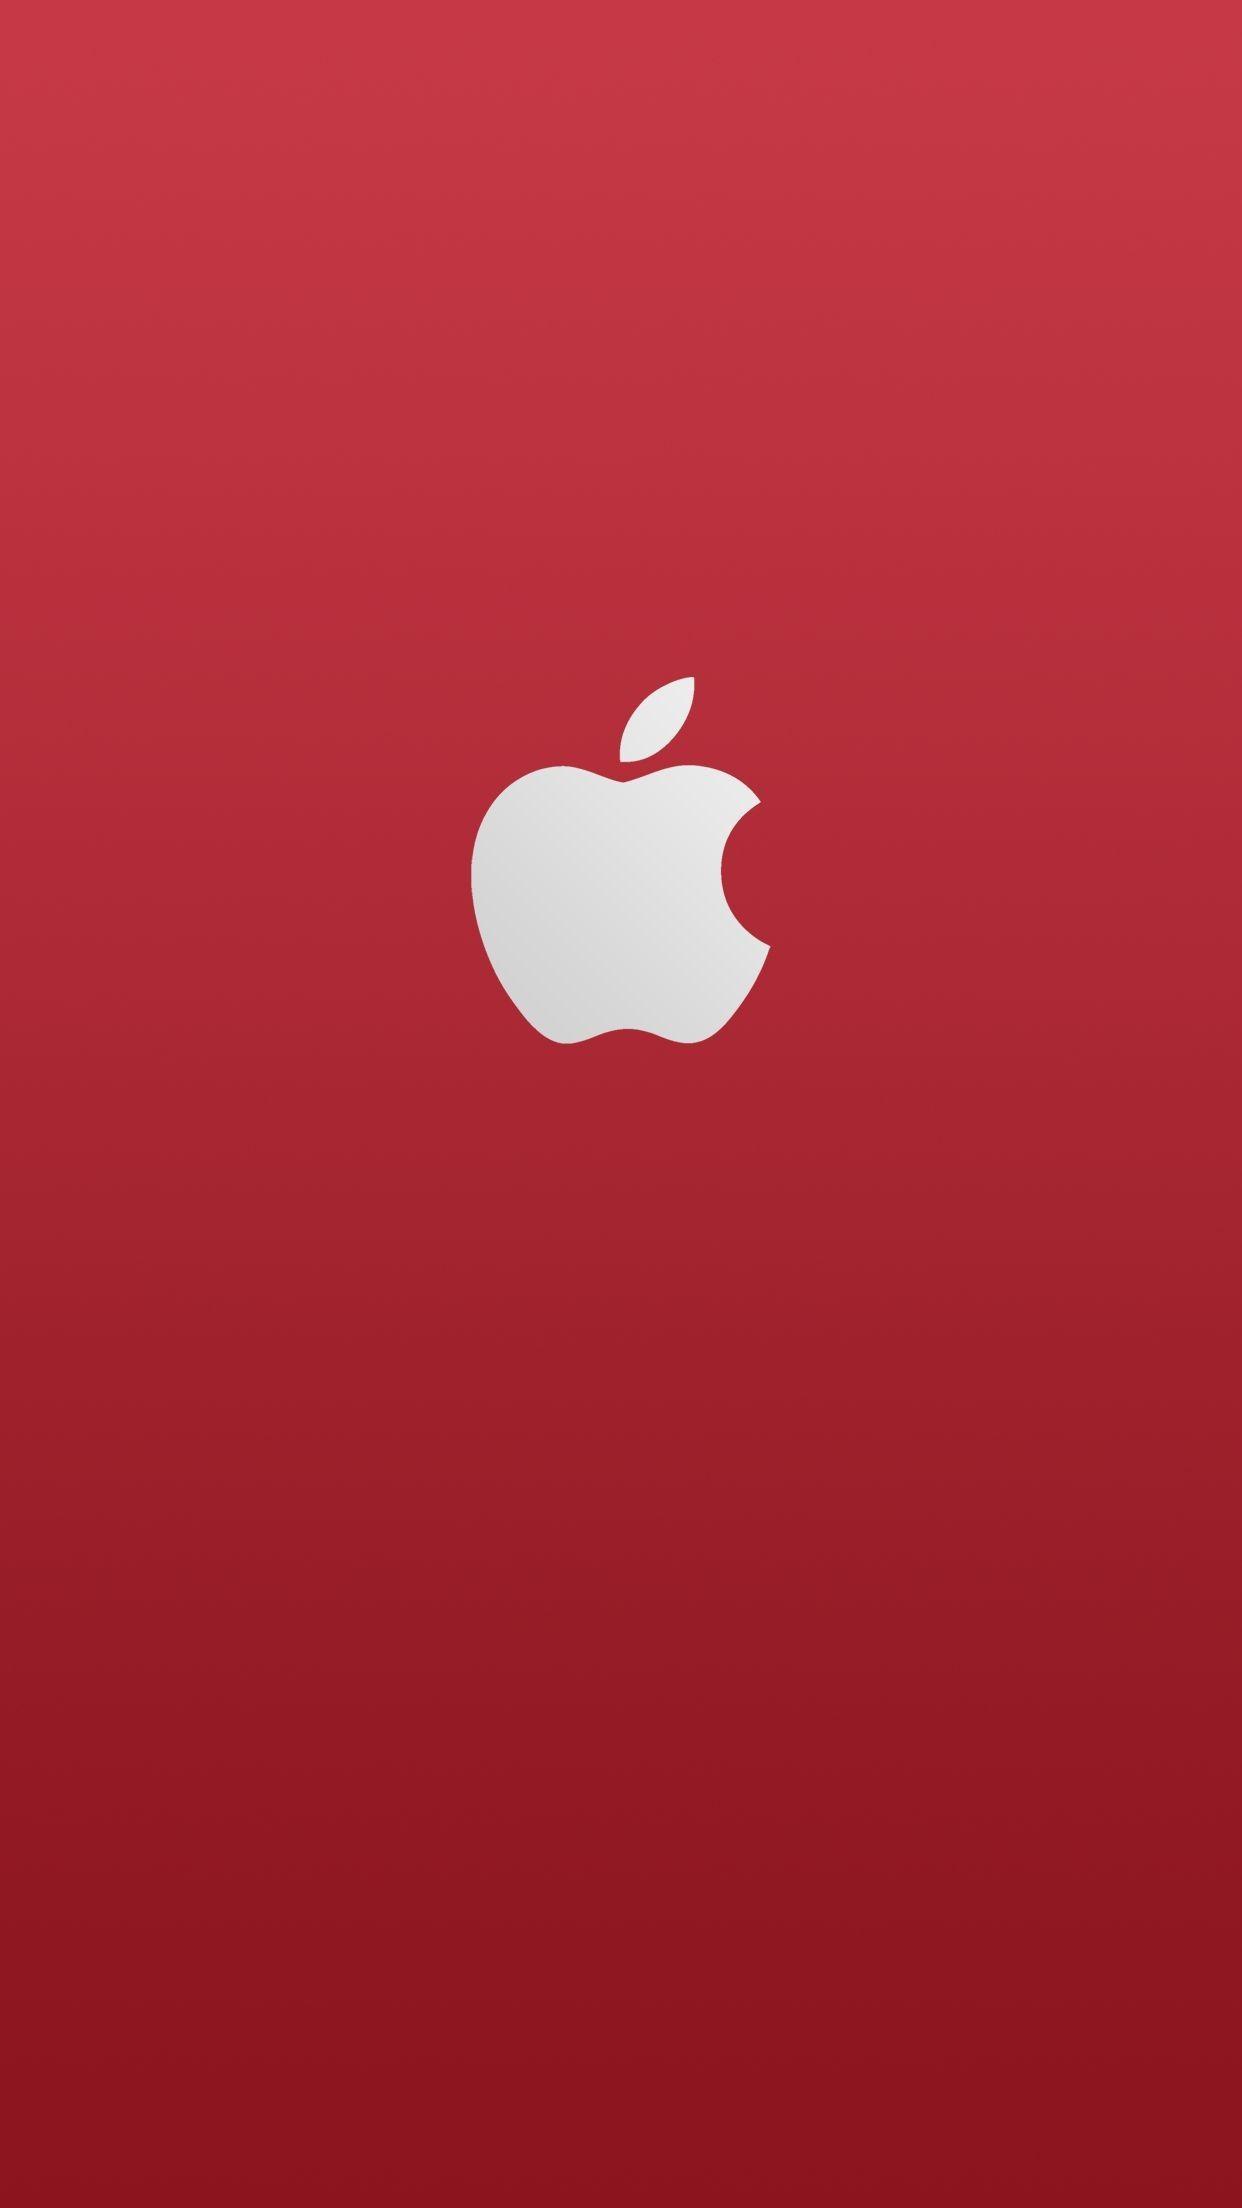 Iphone 8 Red Wallpapers - Top Những Hình Ảnh Đẹp